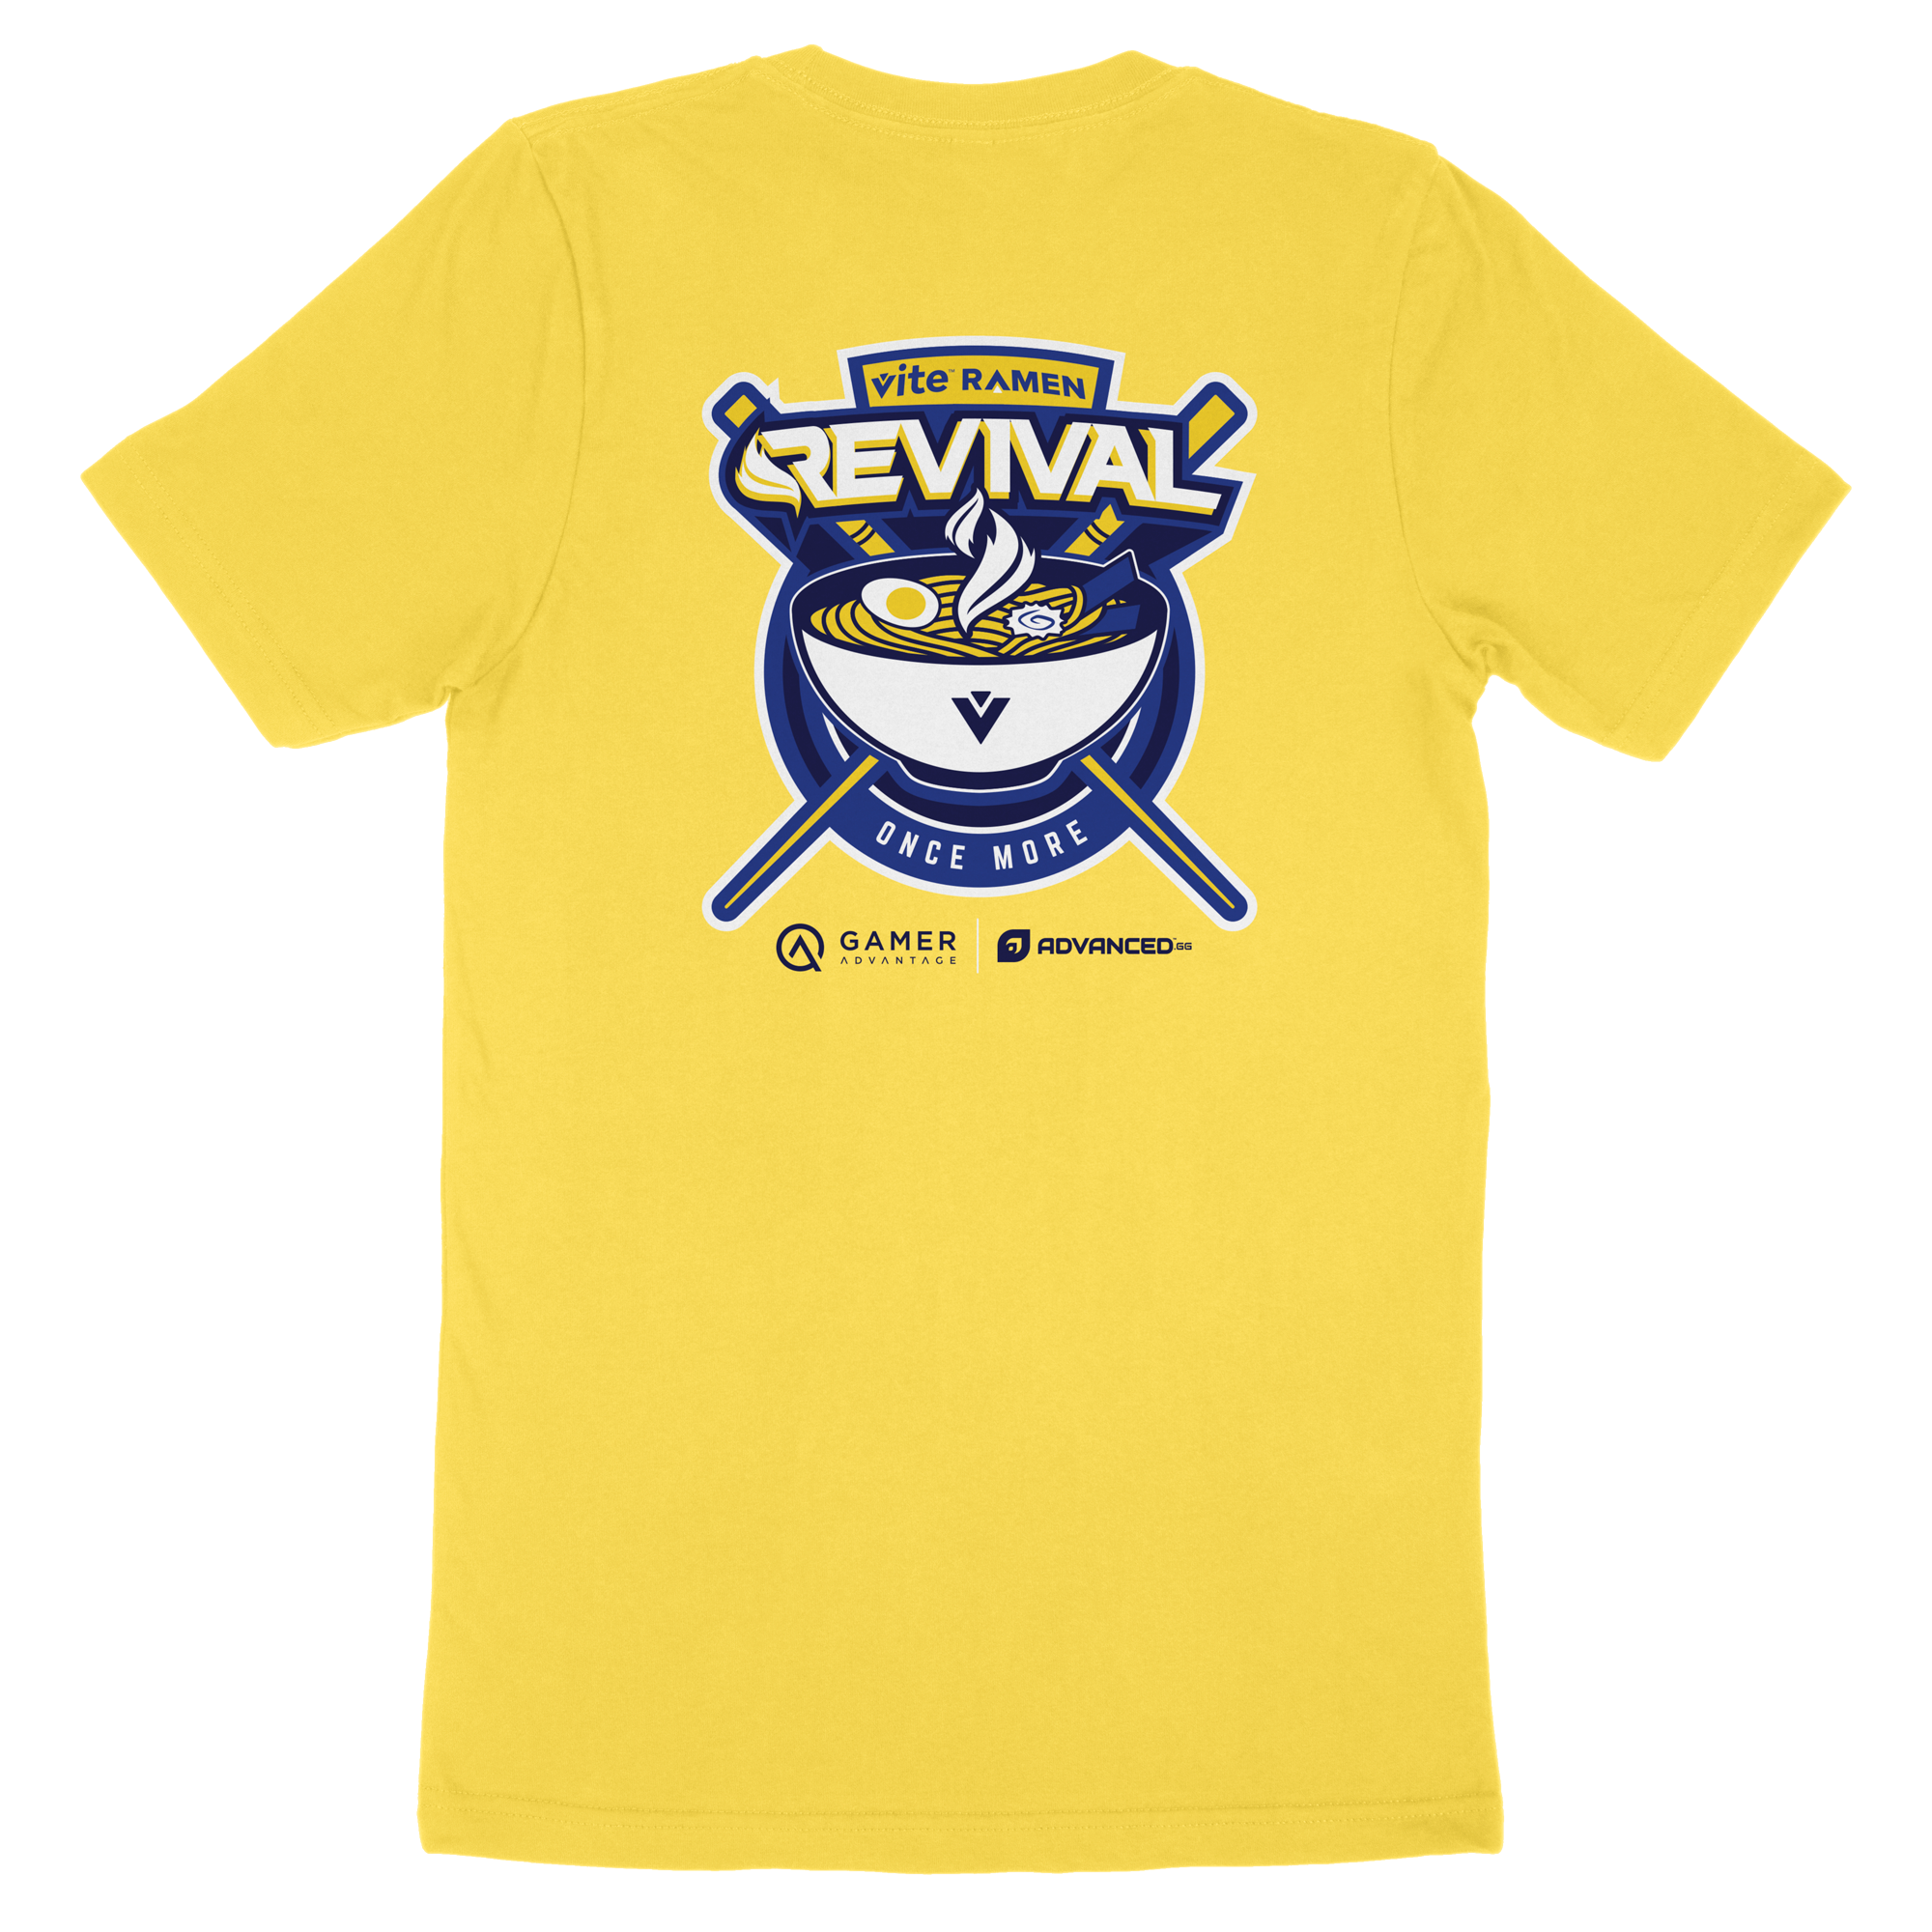 Revival 2020 Mood Shirts